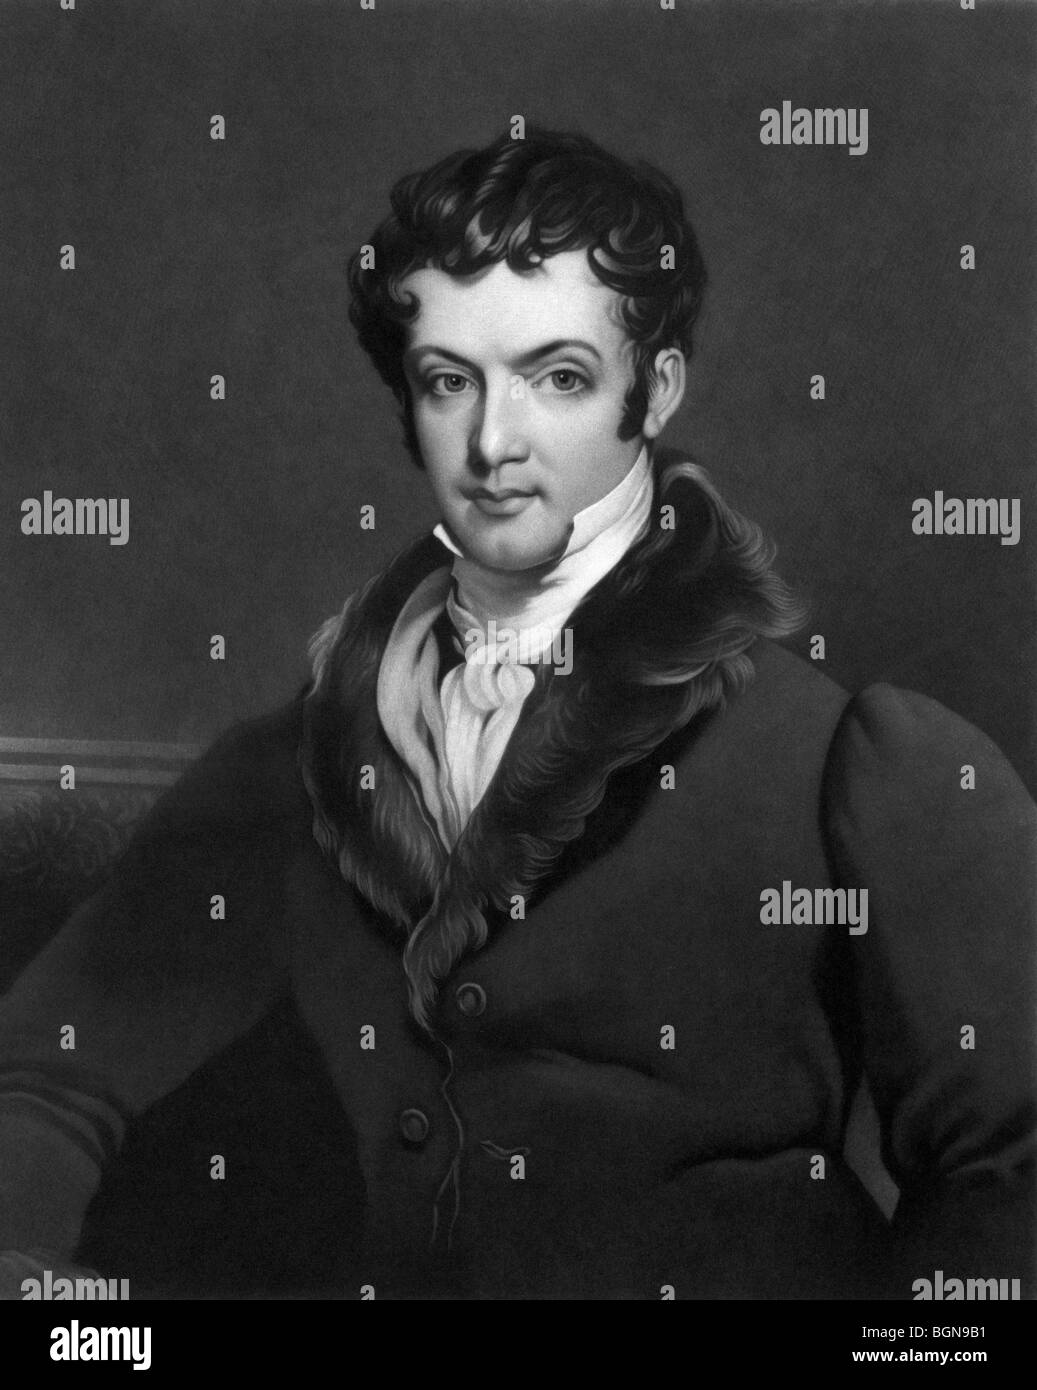 Porträt c1896 des amerikanischen Schriftstellers Washington Irving (1783-1859) - Autor von Rip Van Winkle und The Legend of Sleepy Hollow. Stockfoto